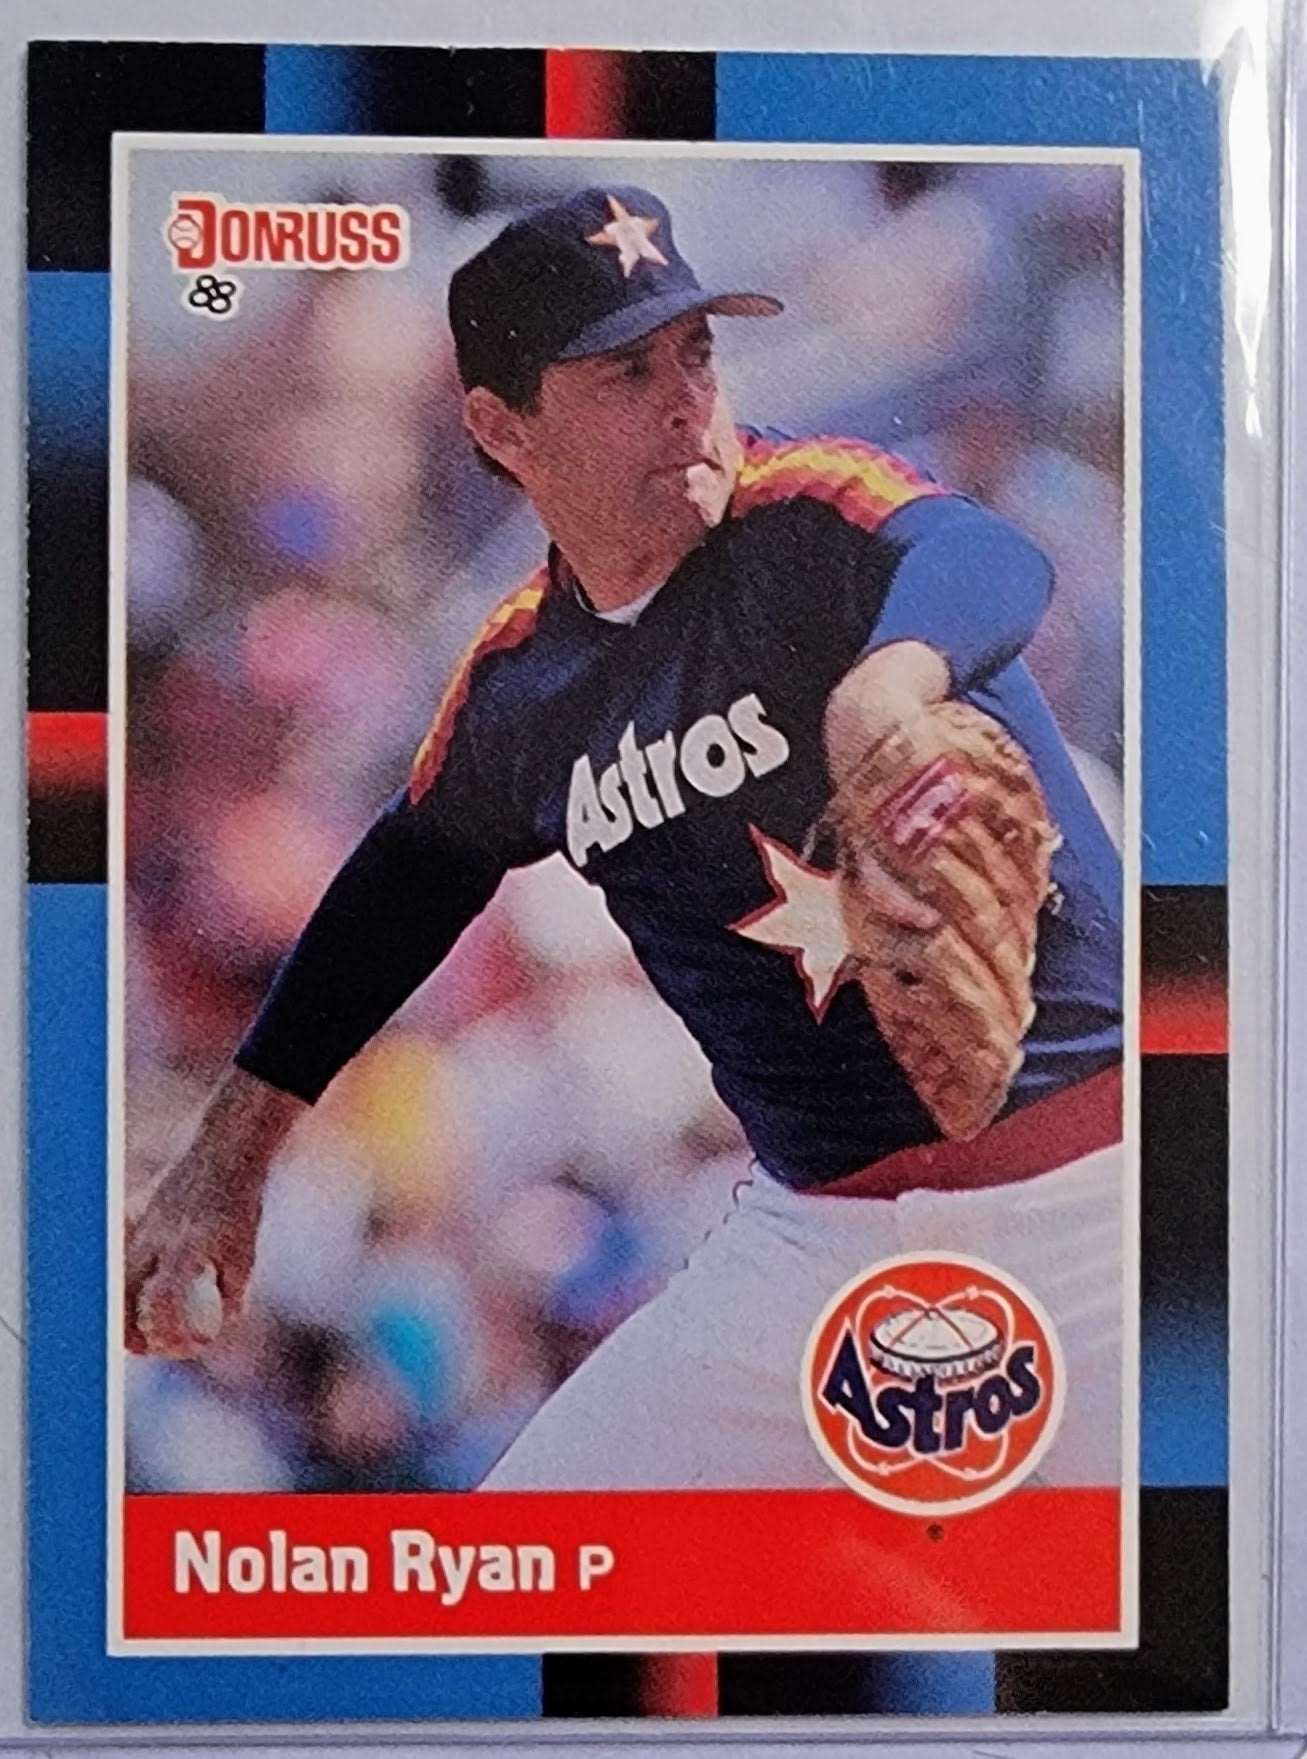 1988 Donruss Nolan Ryan Baseball Card AVM1 simple Xclusive Collectibles   